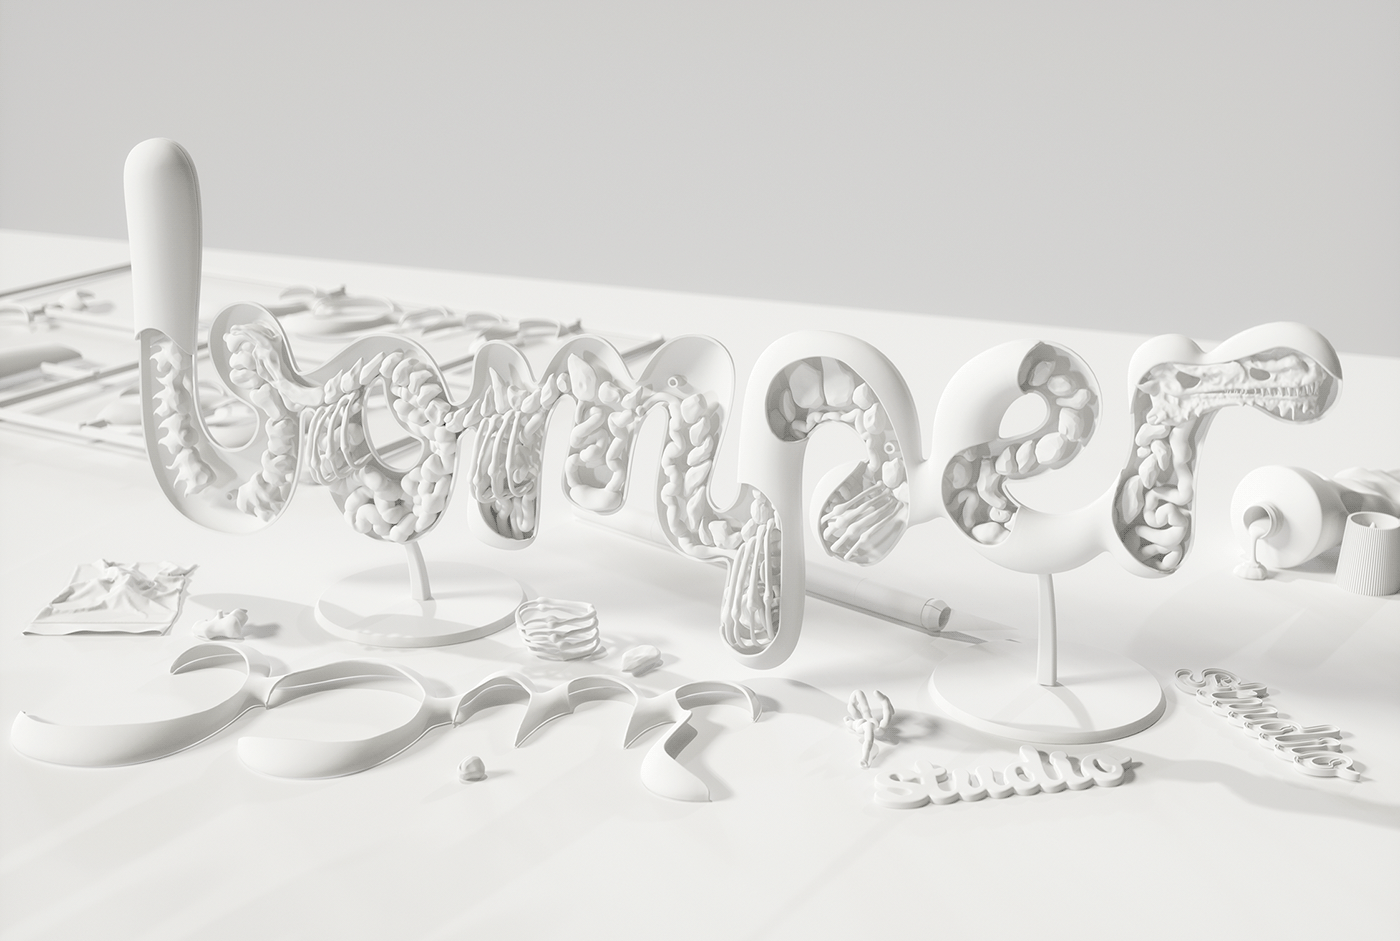 octane 3D ILLUSTRATION  skull bones science CGI organs model Ident